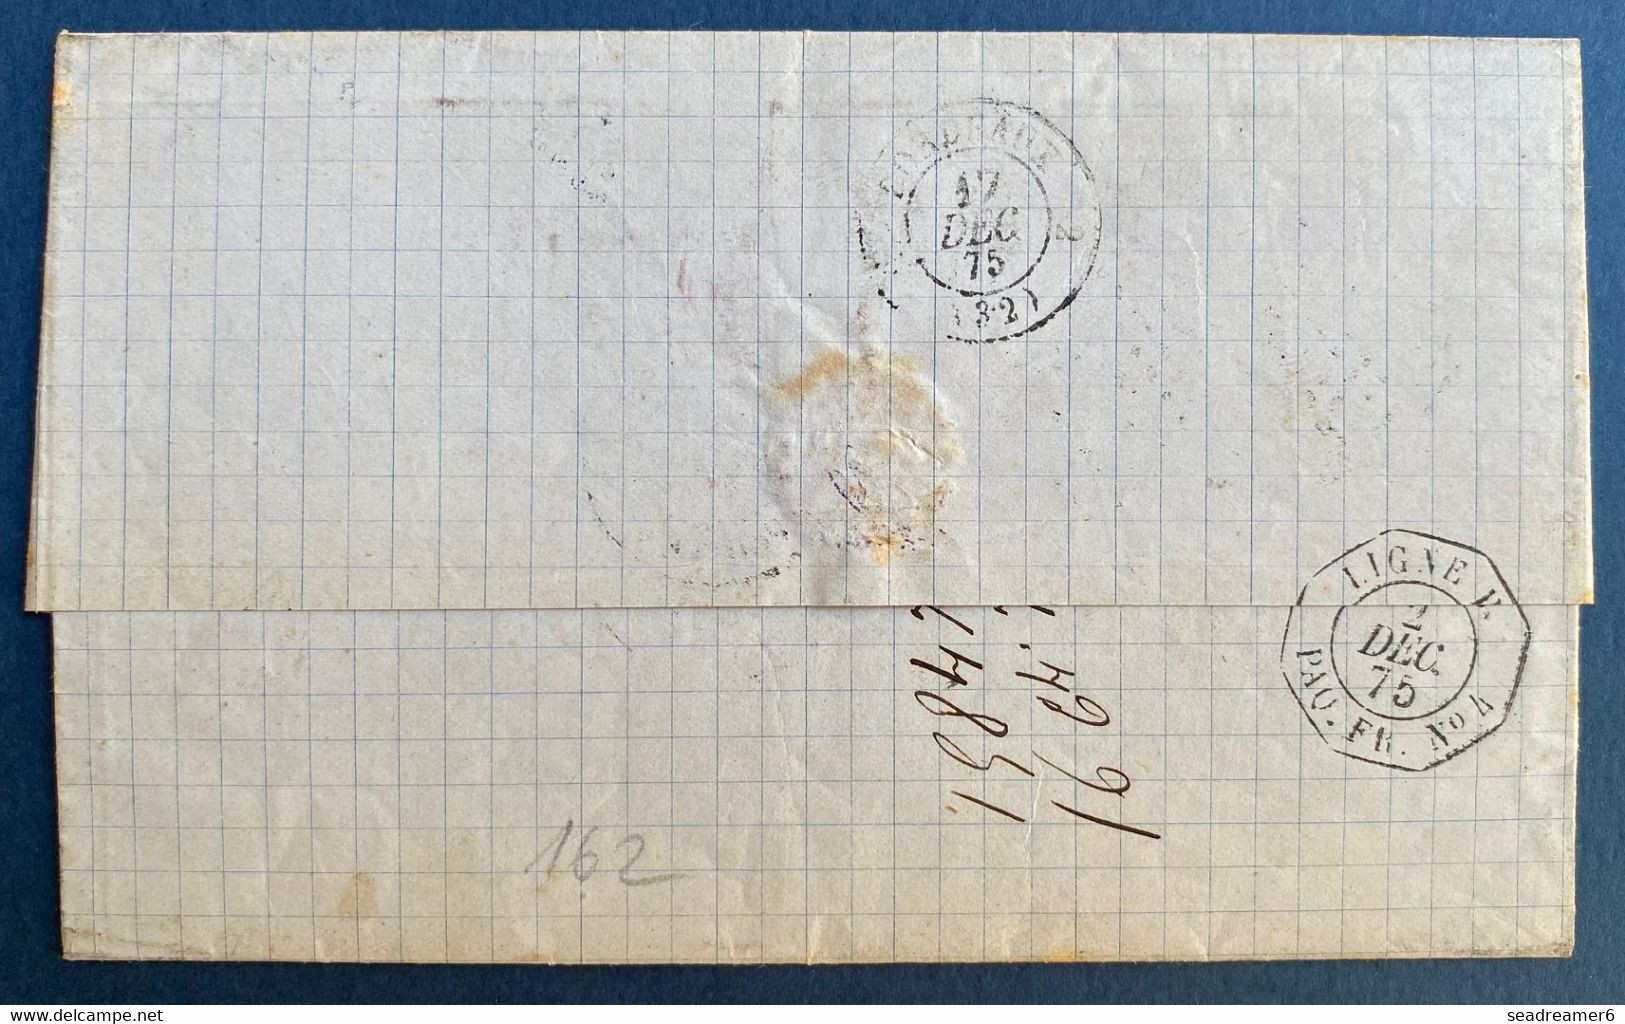 Guadeloupe Lettre 27 Nov 1875 Pour Bordeaux Paire Du N°23 Obl GC Losange 8 X 8 + Dateur "Paq.fr /Pointe à Pitre" - Lettres & Documents